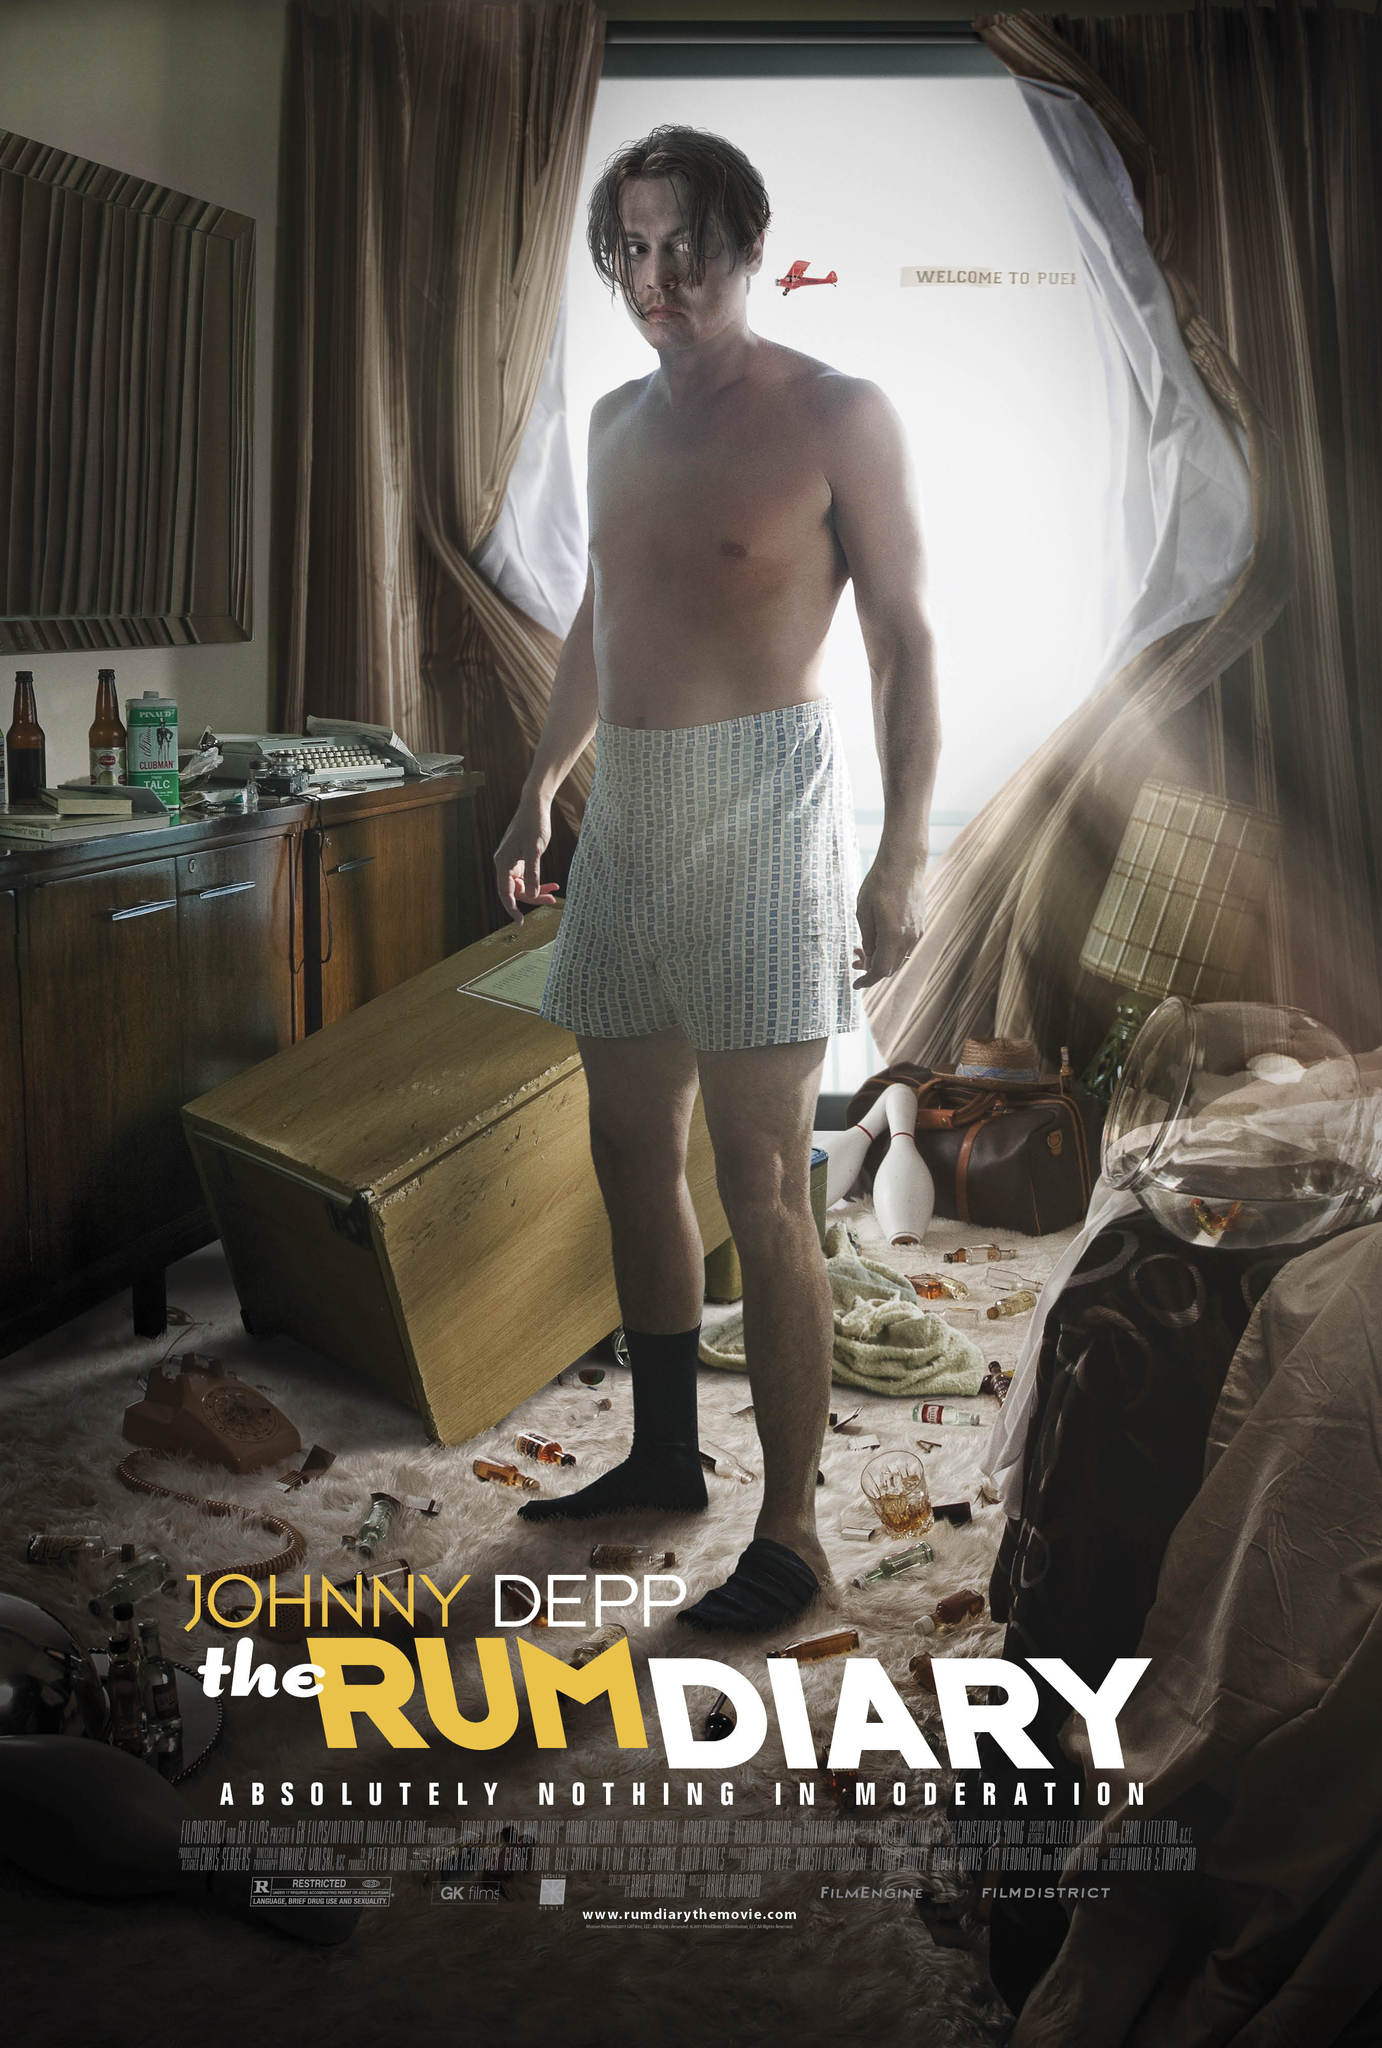 ดูหนังออนไลน์ฟรี The Rum Diary (2011) เดอะ รัม ไดอะรี่ ปูมหลังนายแอลกอฮอล์ หนังเต็มเรื่อง หนังมาสเตอร์ ดูหนังHD ดูหนังออนไลน์ ดูหนังใหม่